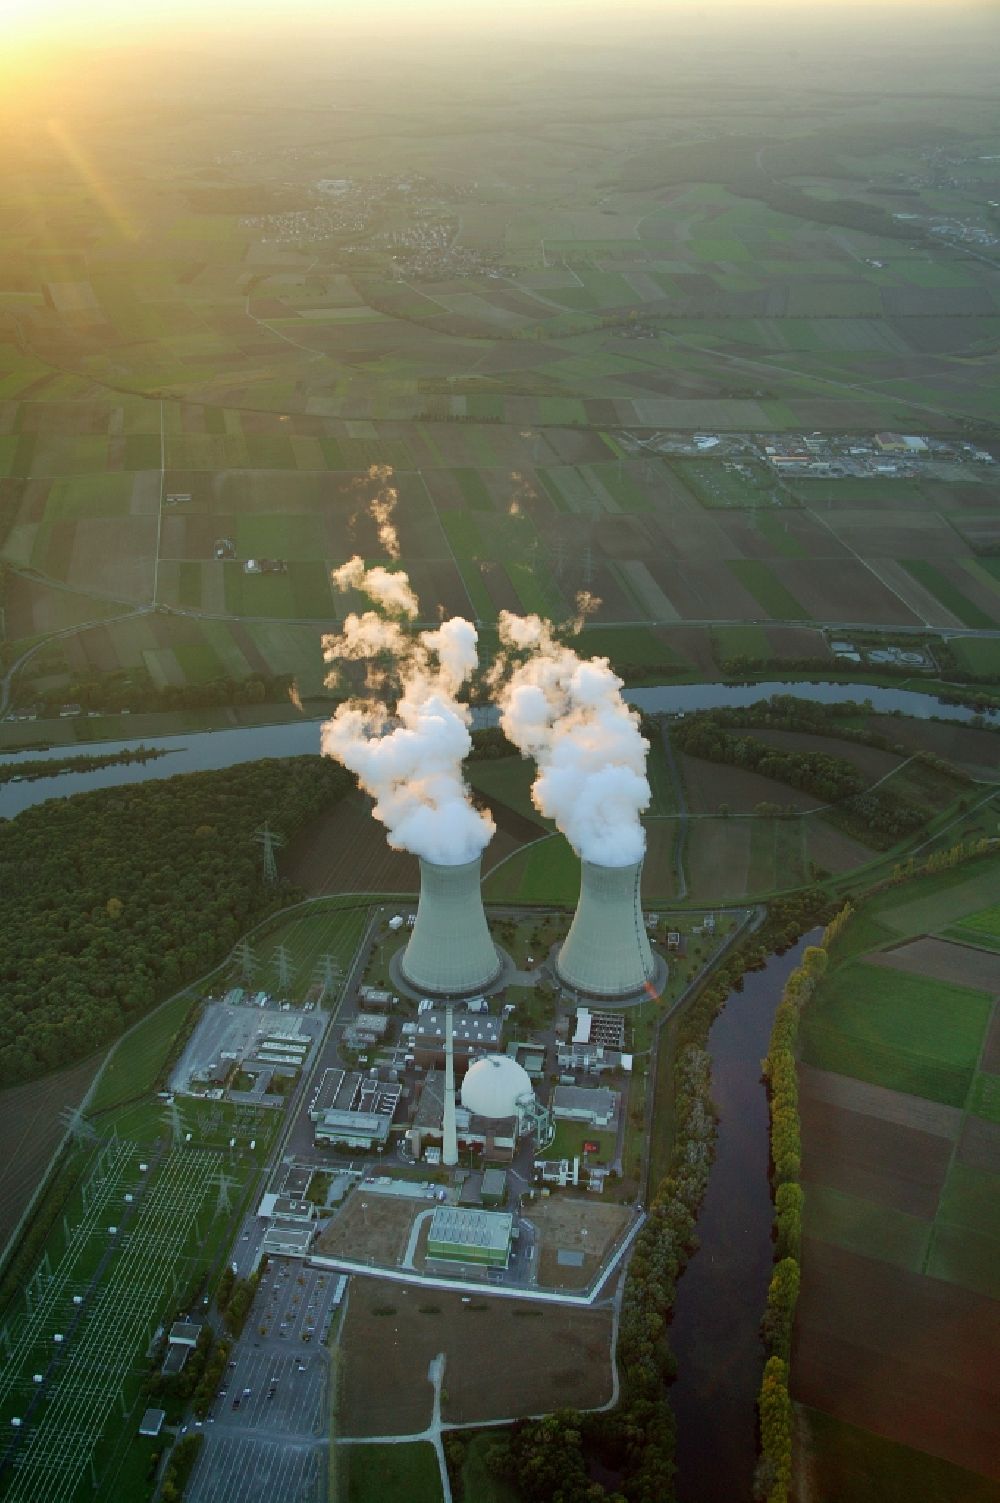 Luftaufnahme Grohnde - Kühltürme des Kernkraftwerk KKW / Atomkraftwerk AKW in Grohnde im Bundesland Niedersachsen